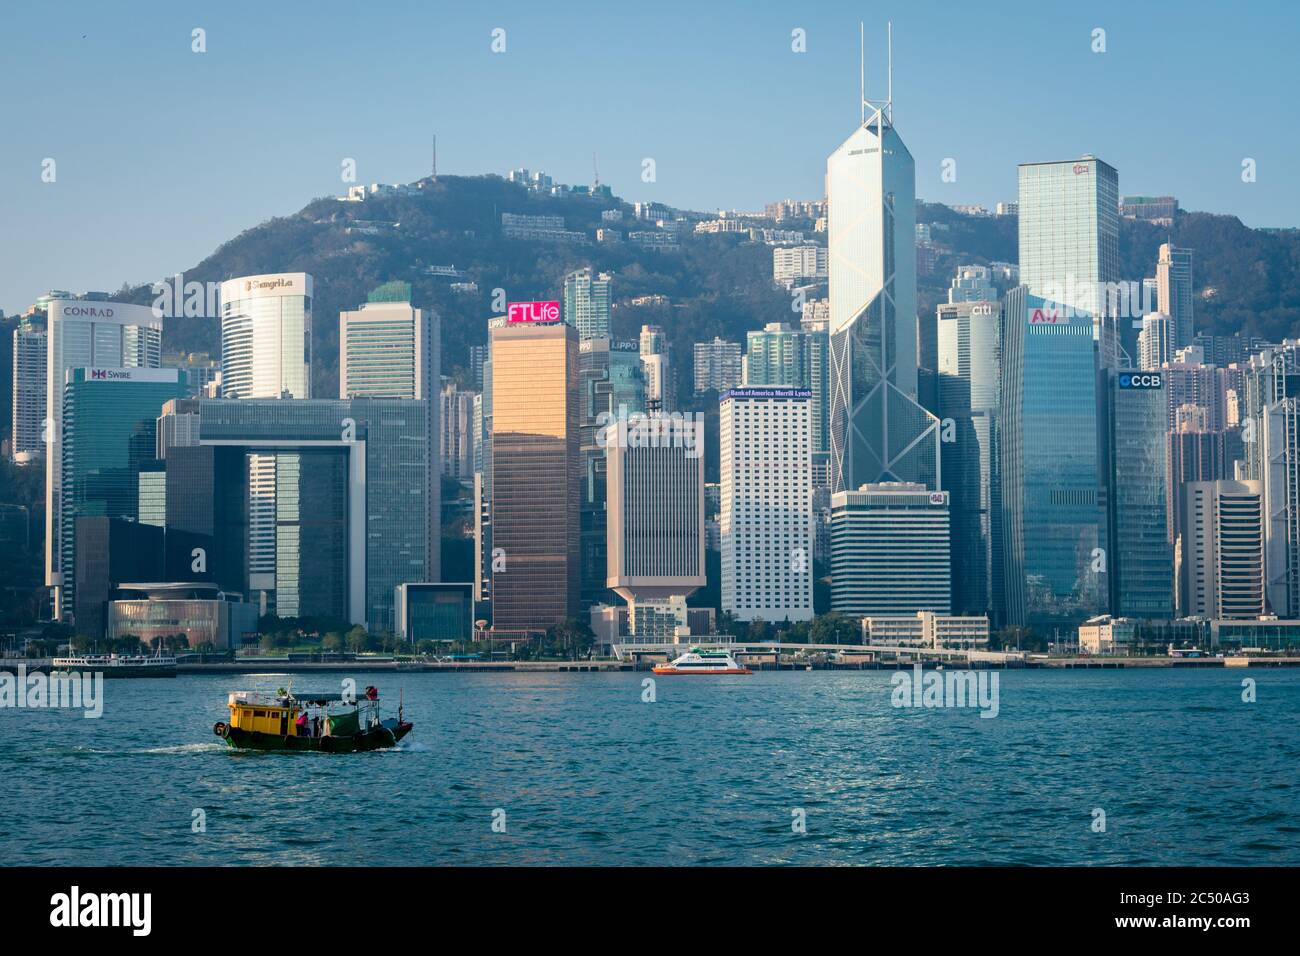 KONG Voyage Nappe Extérieure Hong Kong Skyline Libellé 